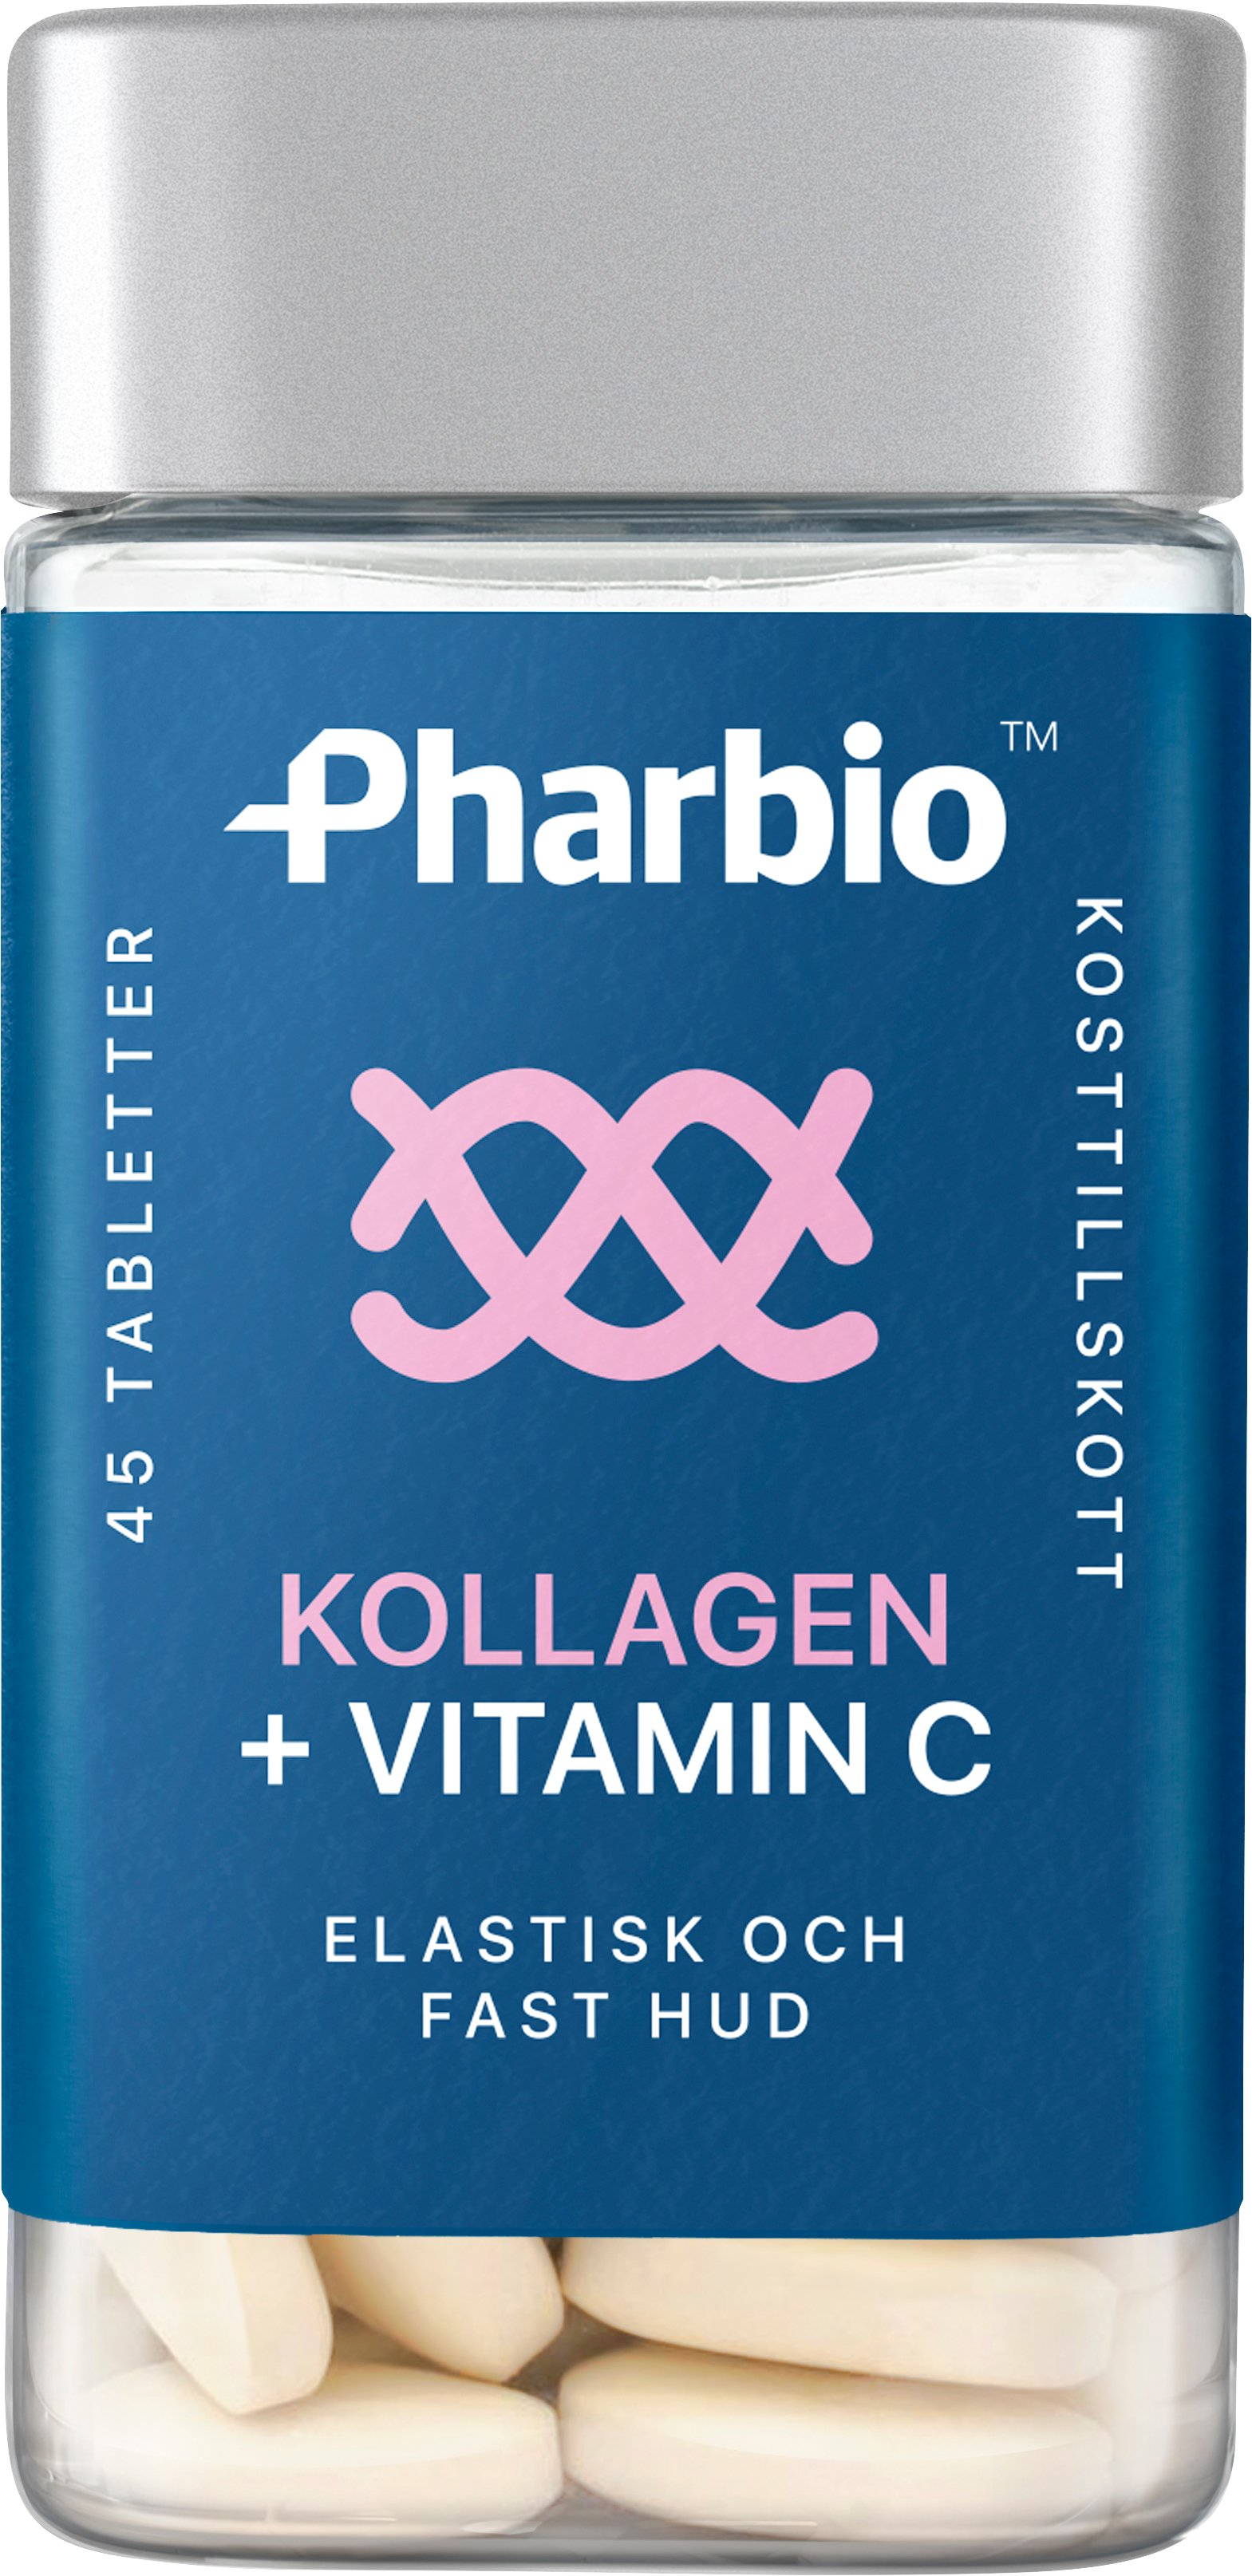 Pharbio Kollagen + Vitamin C 45 tabletter